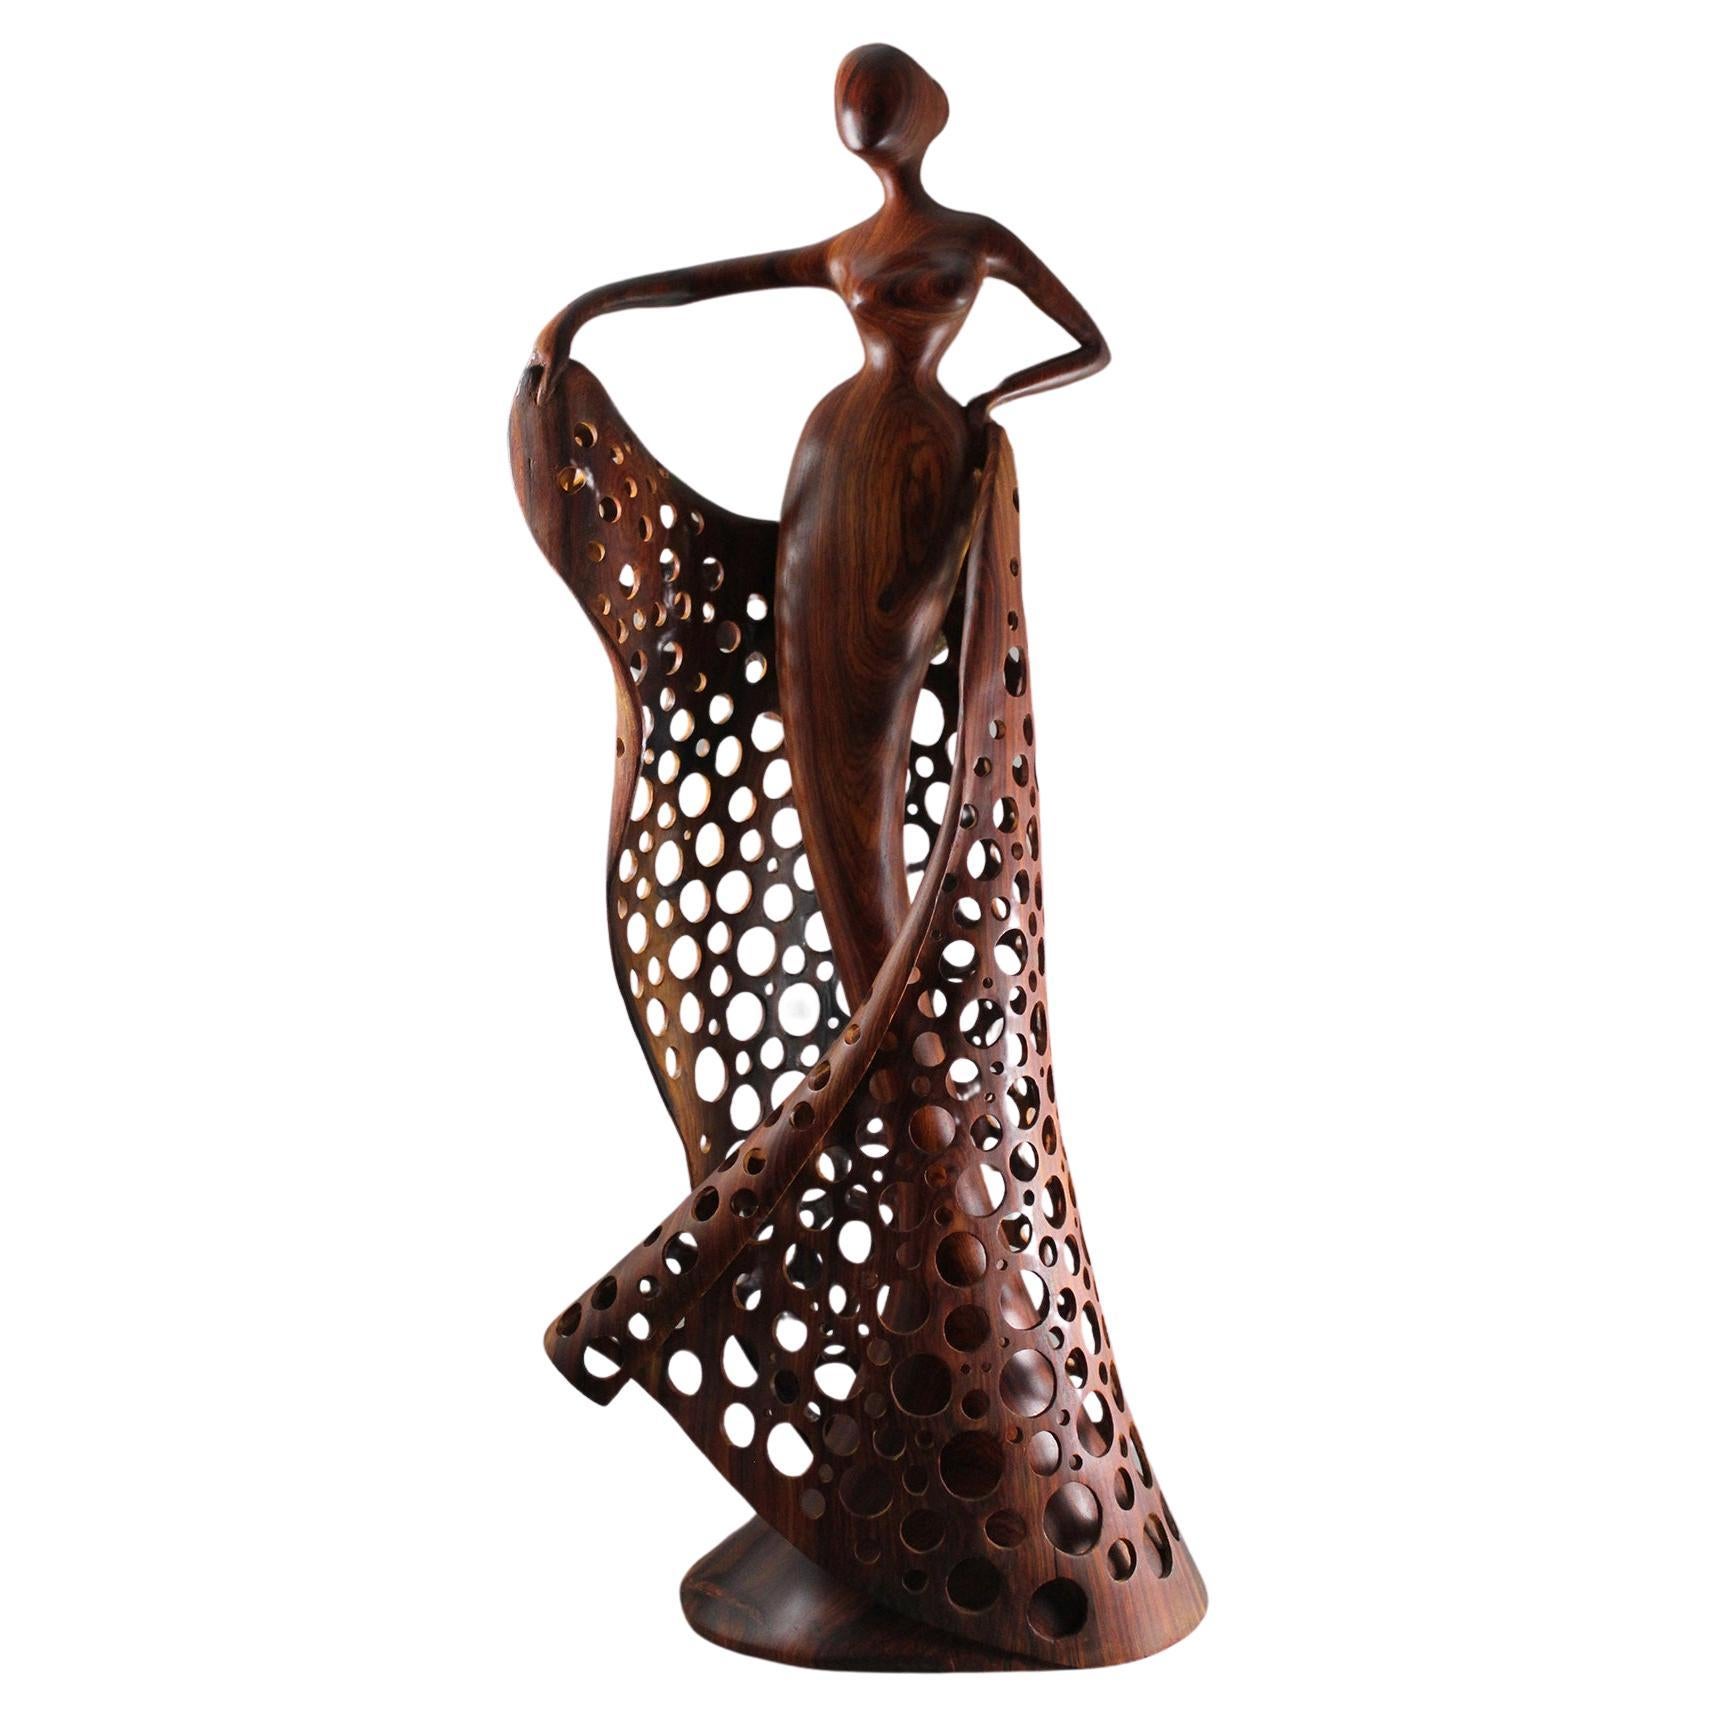 Dance, Wood Sculpture by Nairi Safaryan